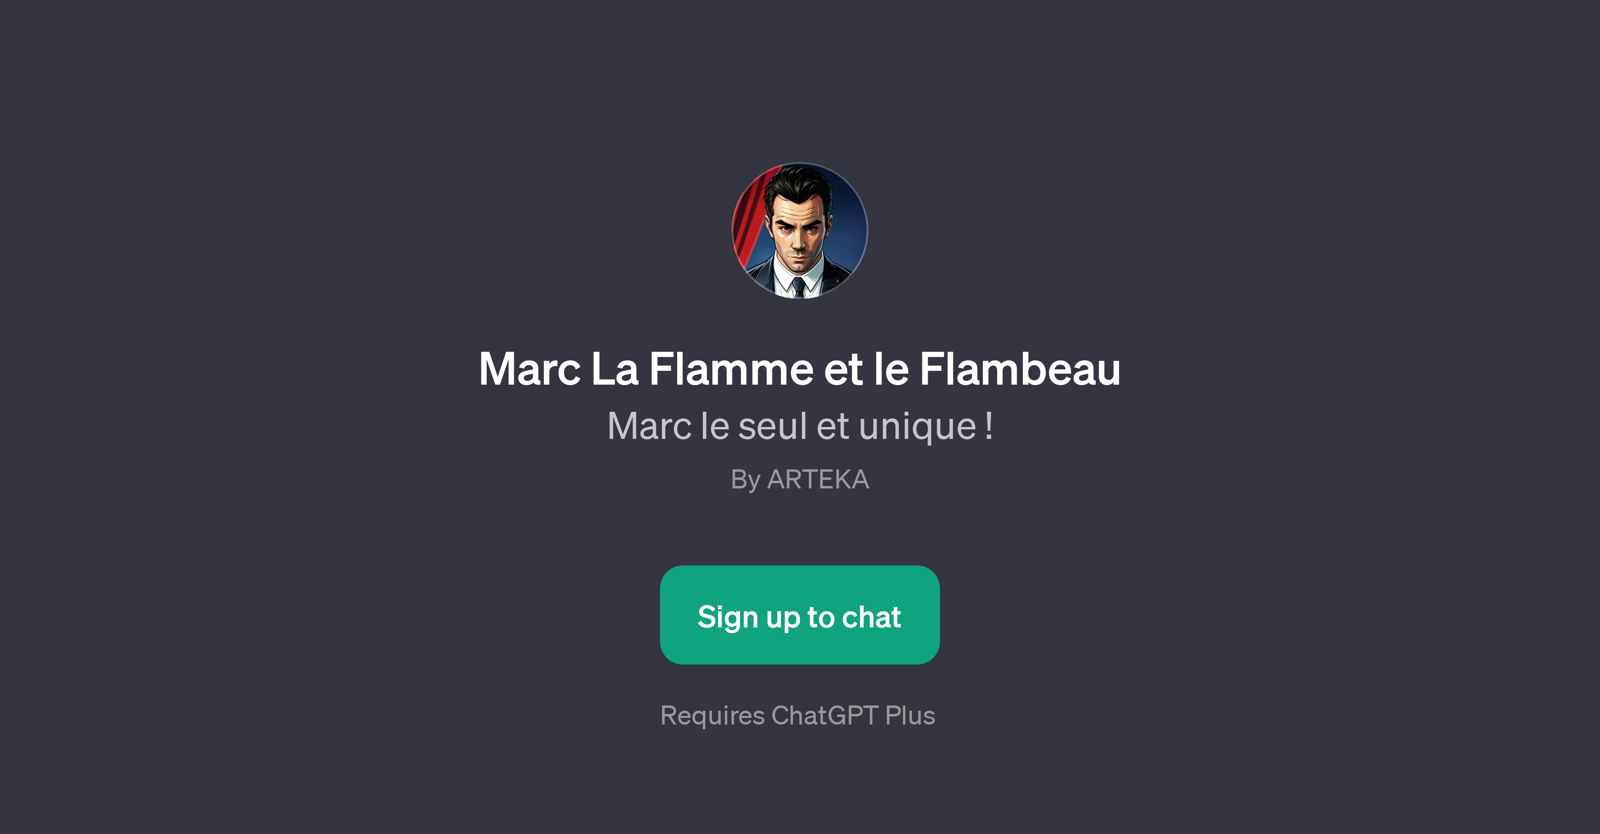 Marc La Flamme et le Flambeau website